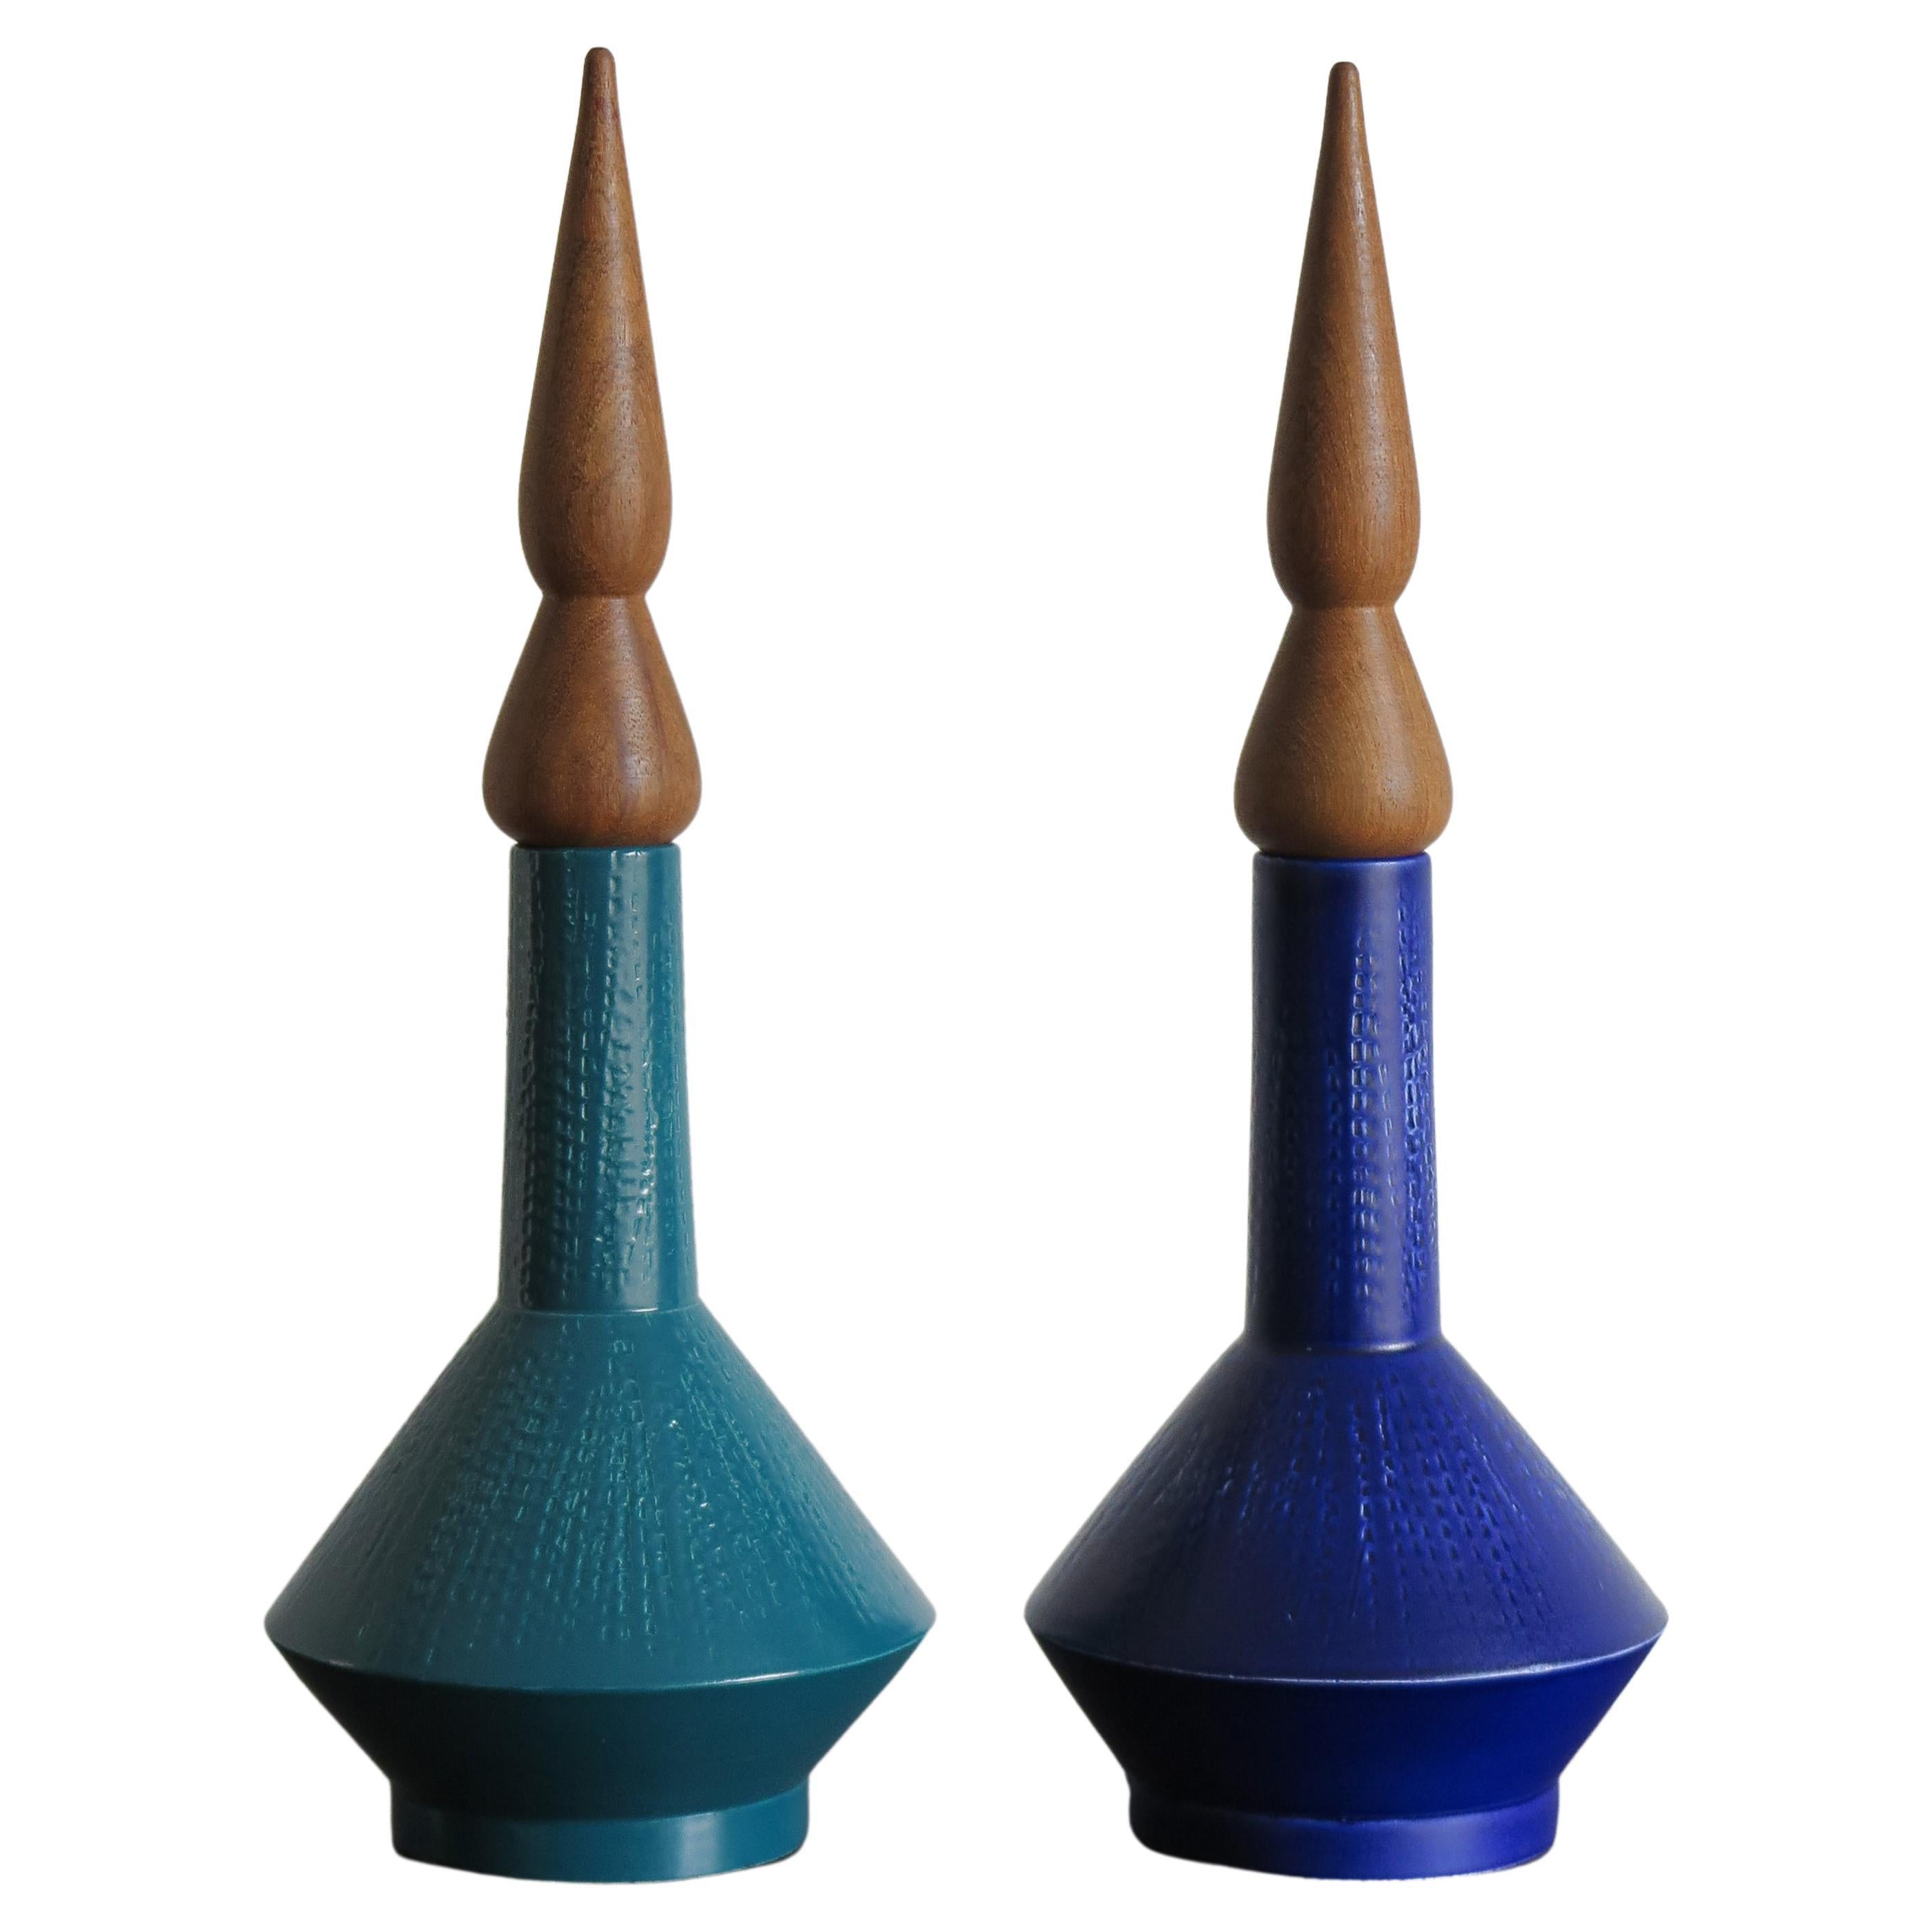 Jarrones Contemporáneos de Cerámica Azul Verde Diseñados por Capperidicasa, Fabricados en Italia